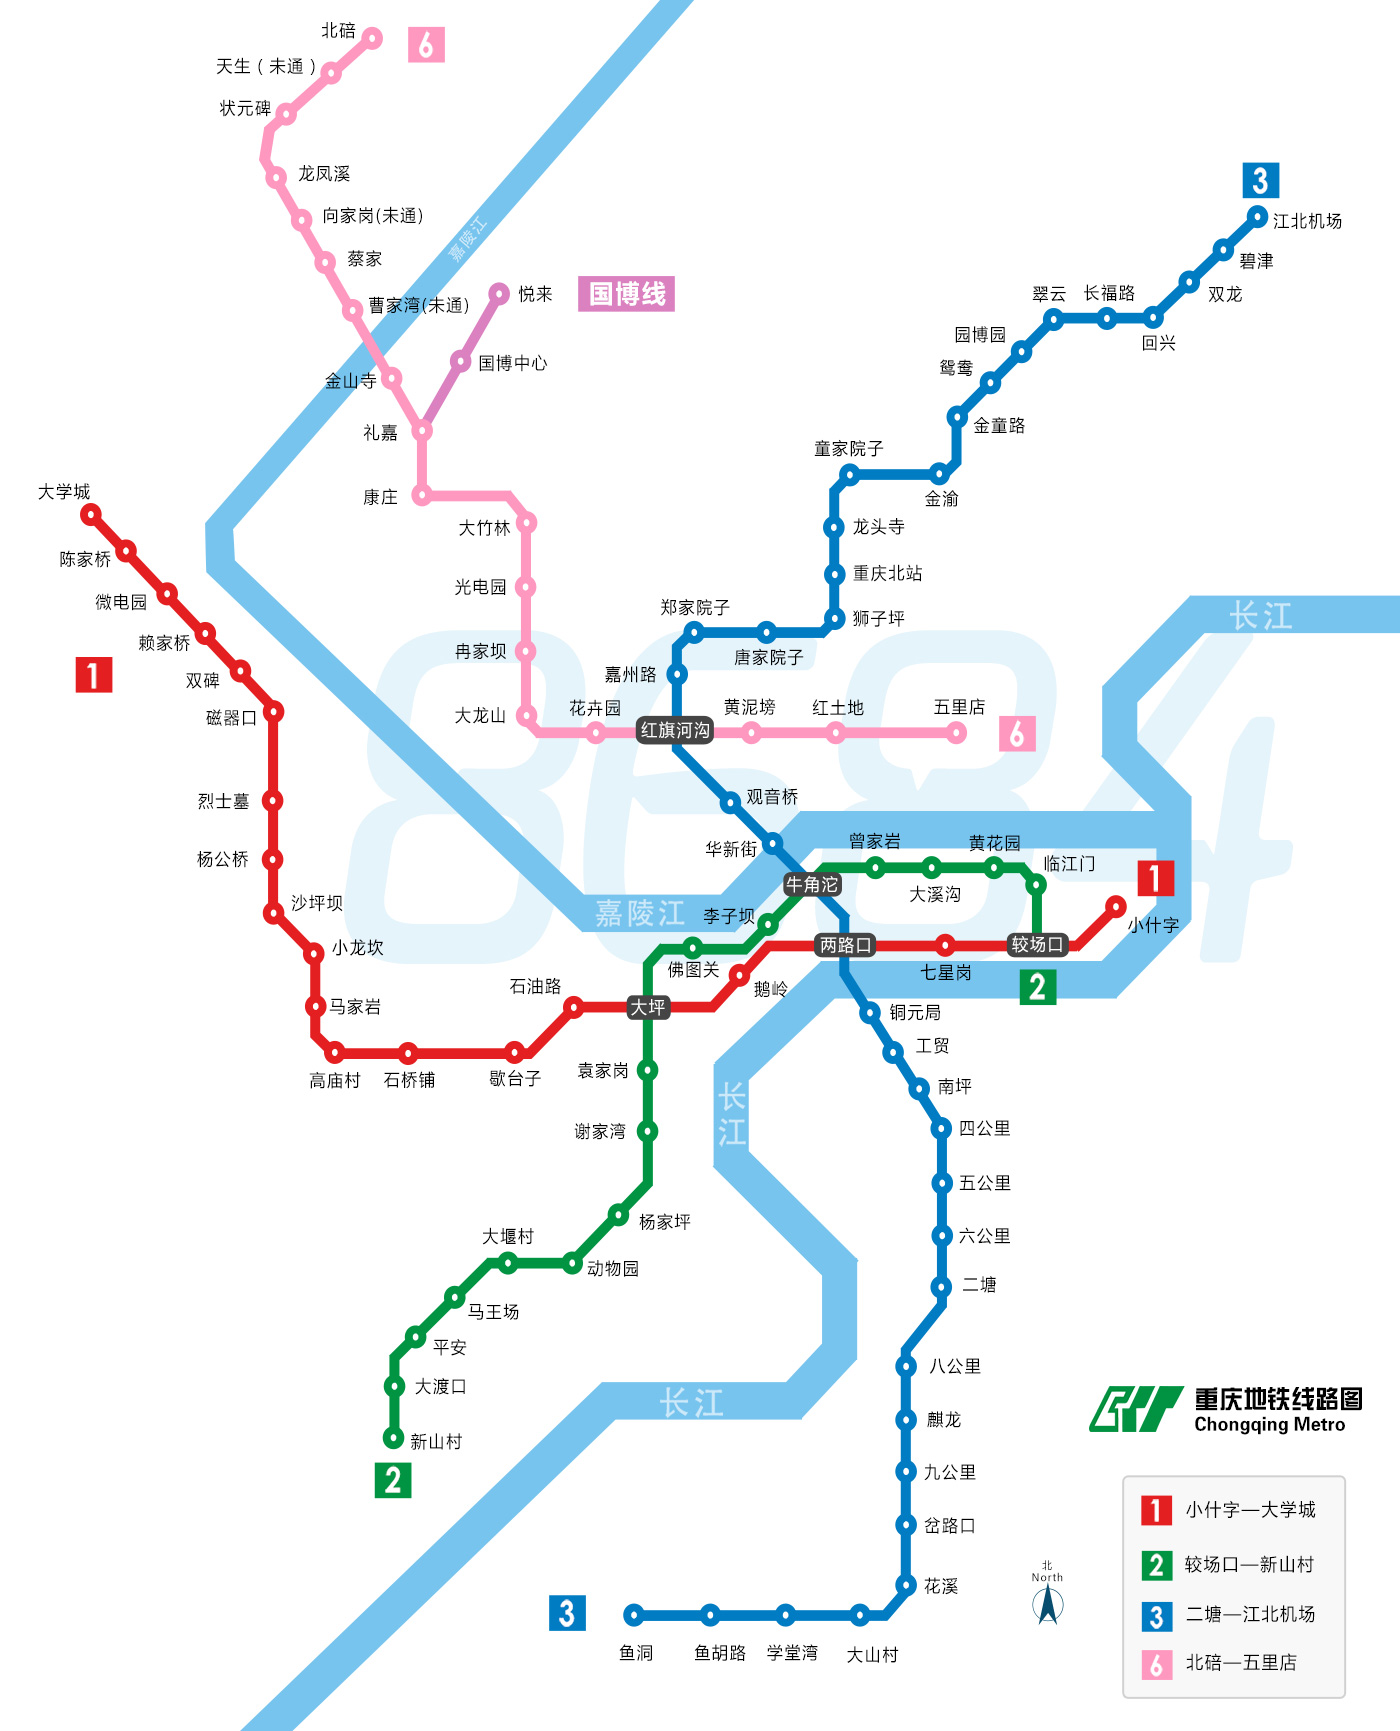 重庆地铁线路图下载|重庆地铁高清线路图下载2015 最新jpg格式线路图_绿色资源网